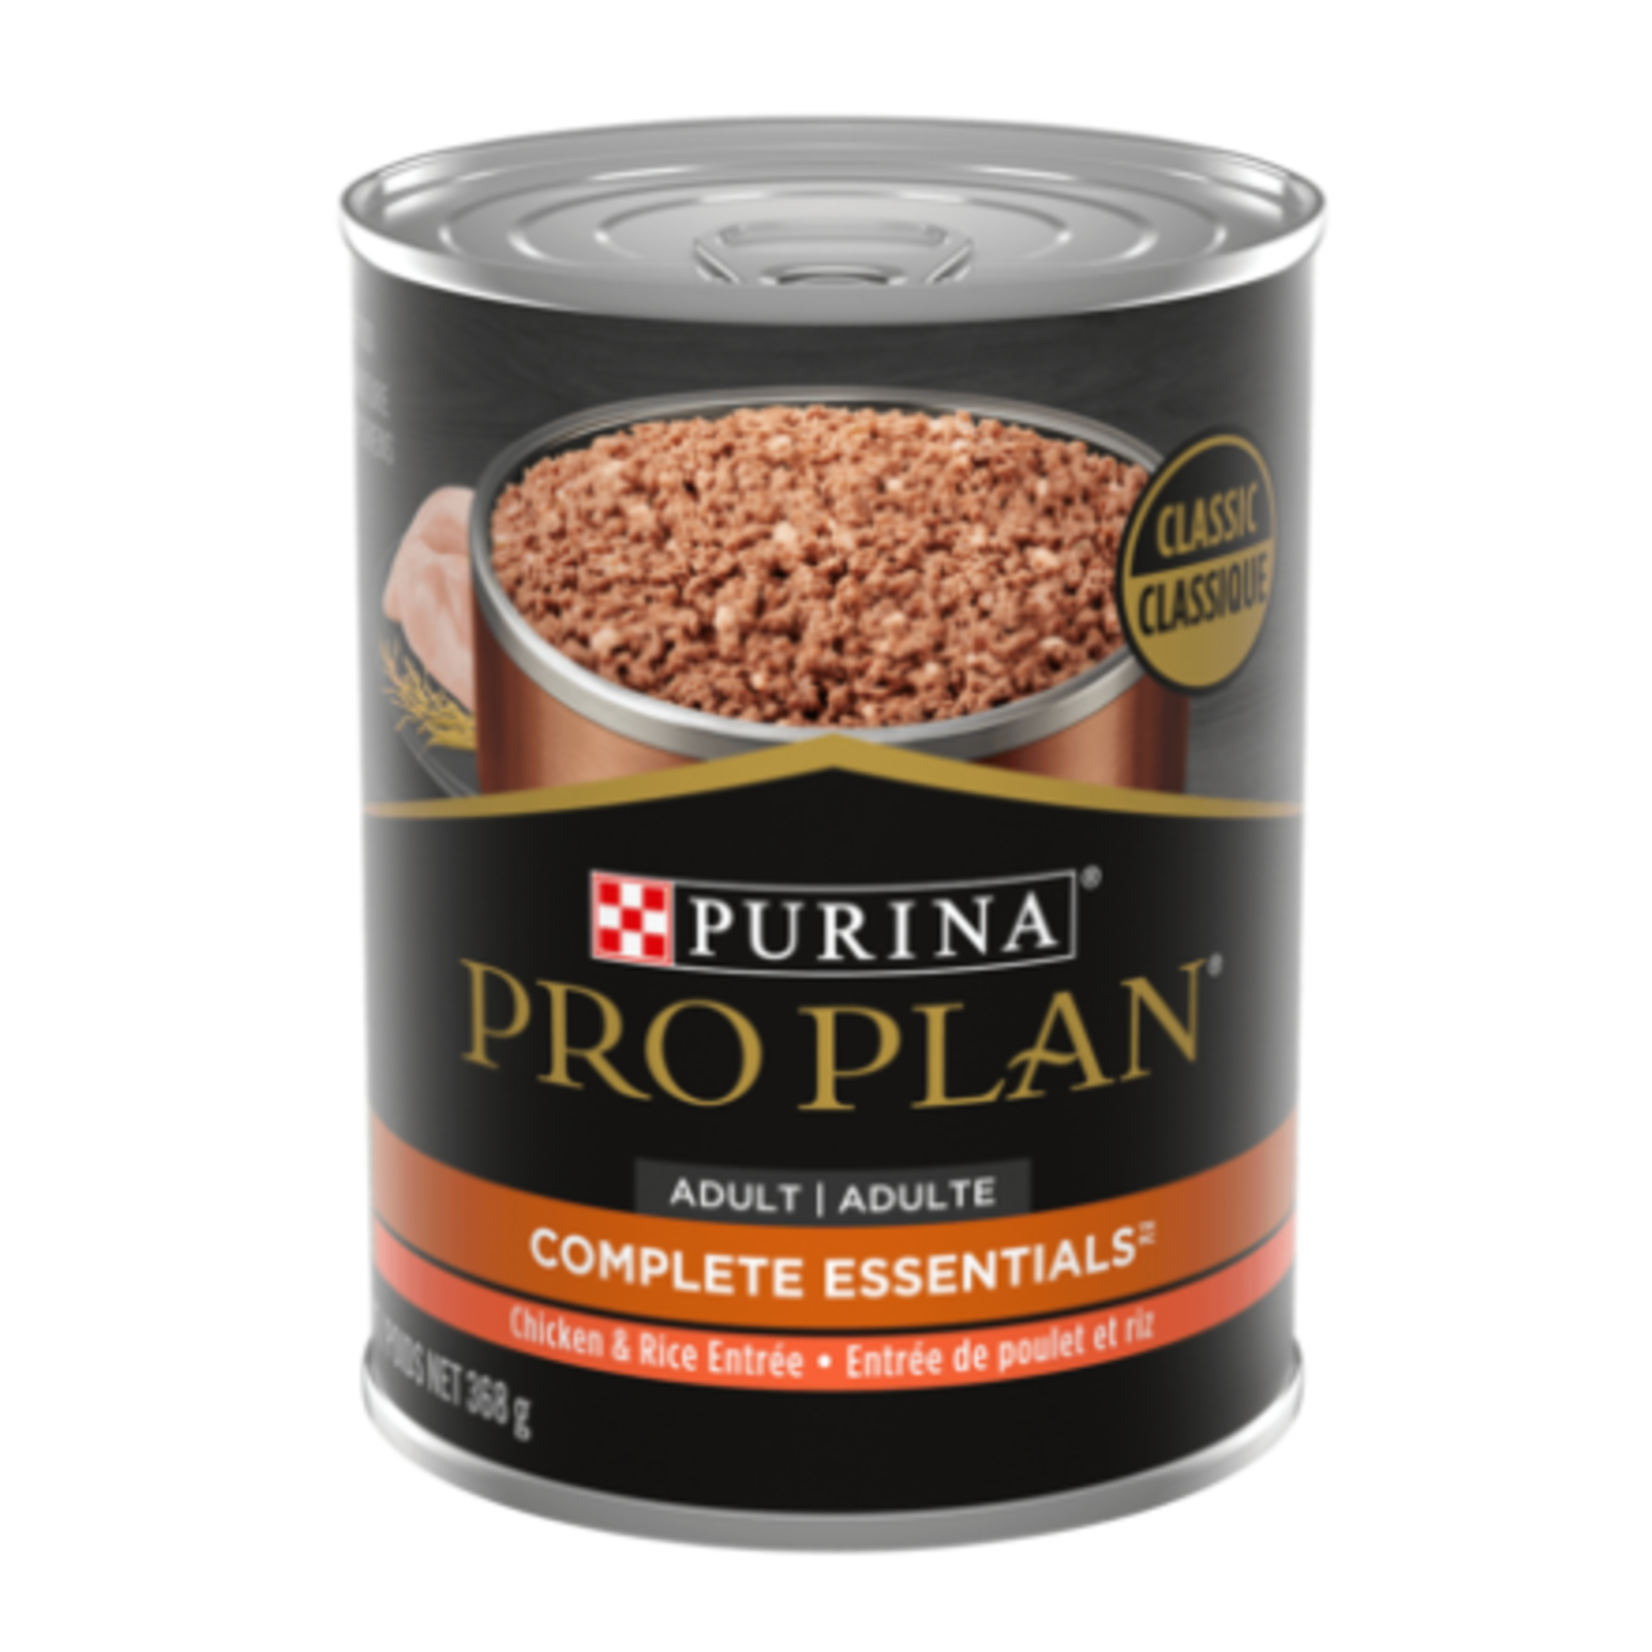 Purina Pro Plan - Complete Essentials - Entrée de Poulet et Riz  - 368 g